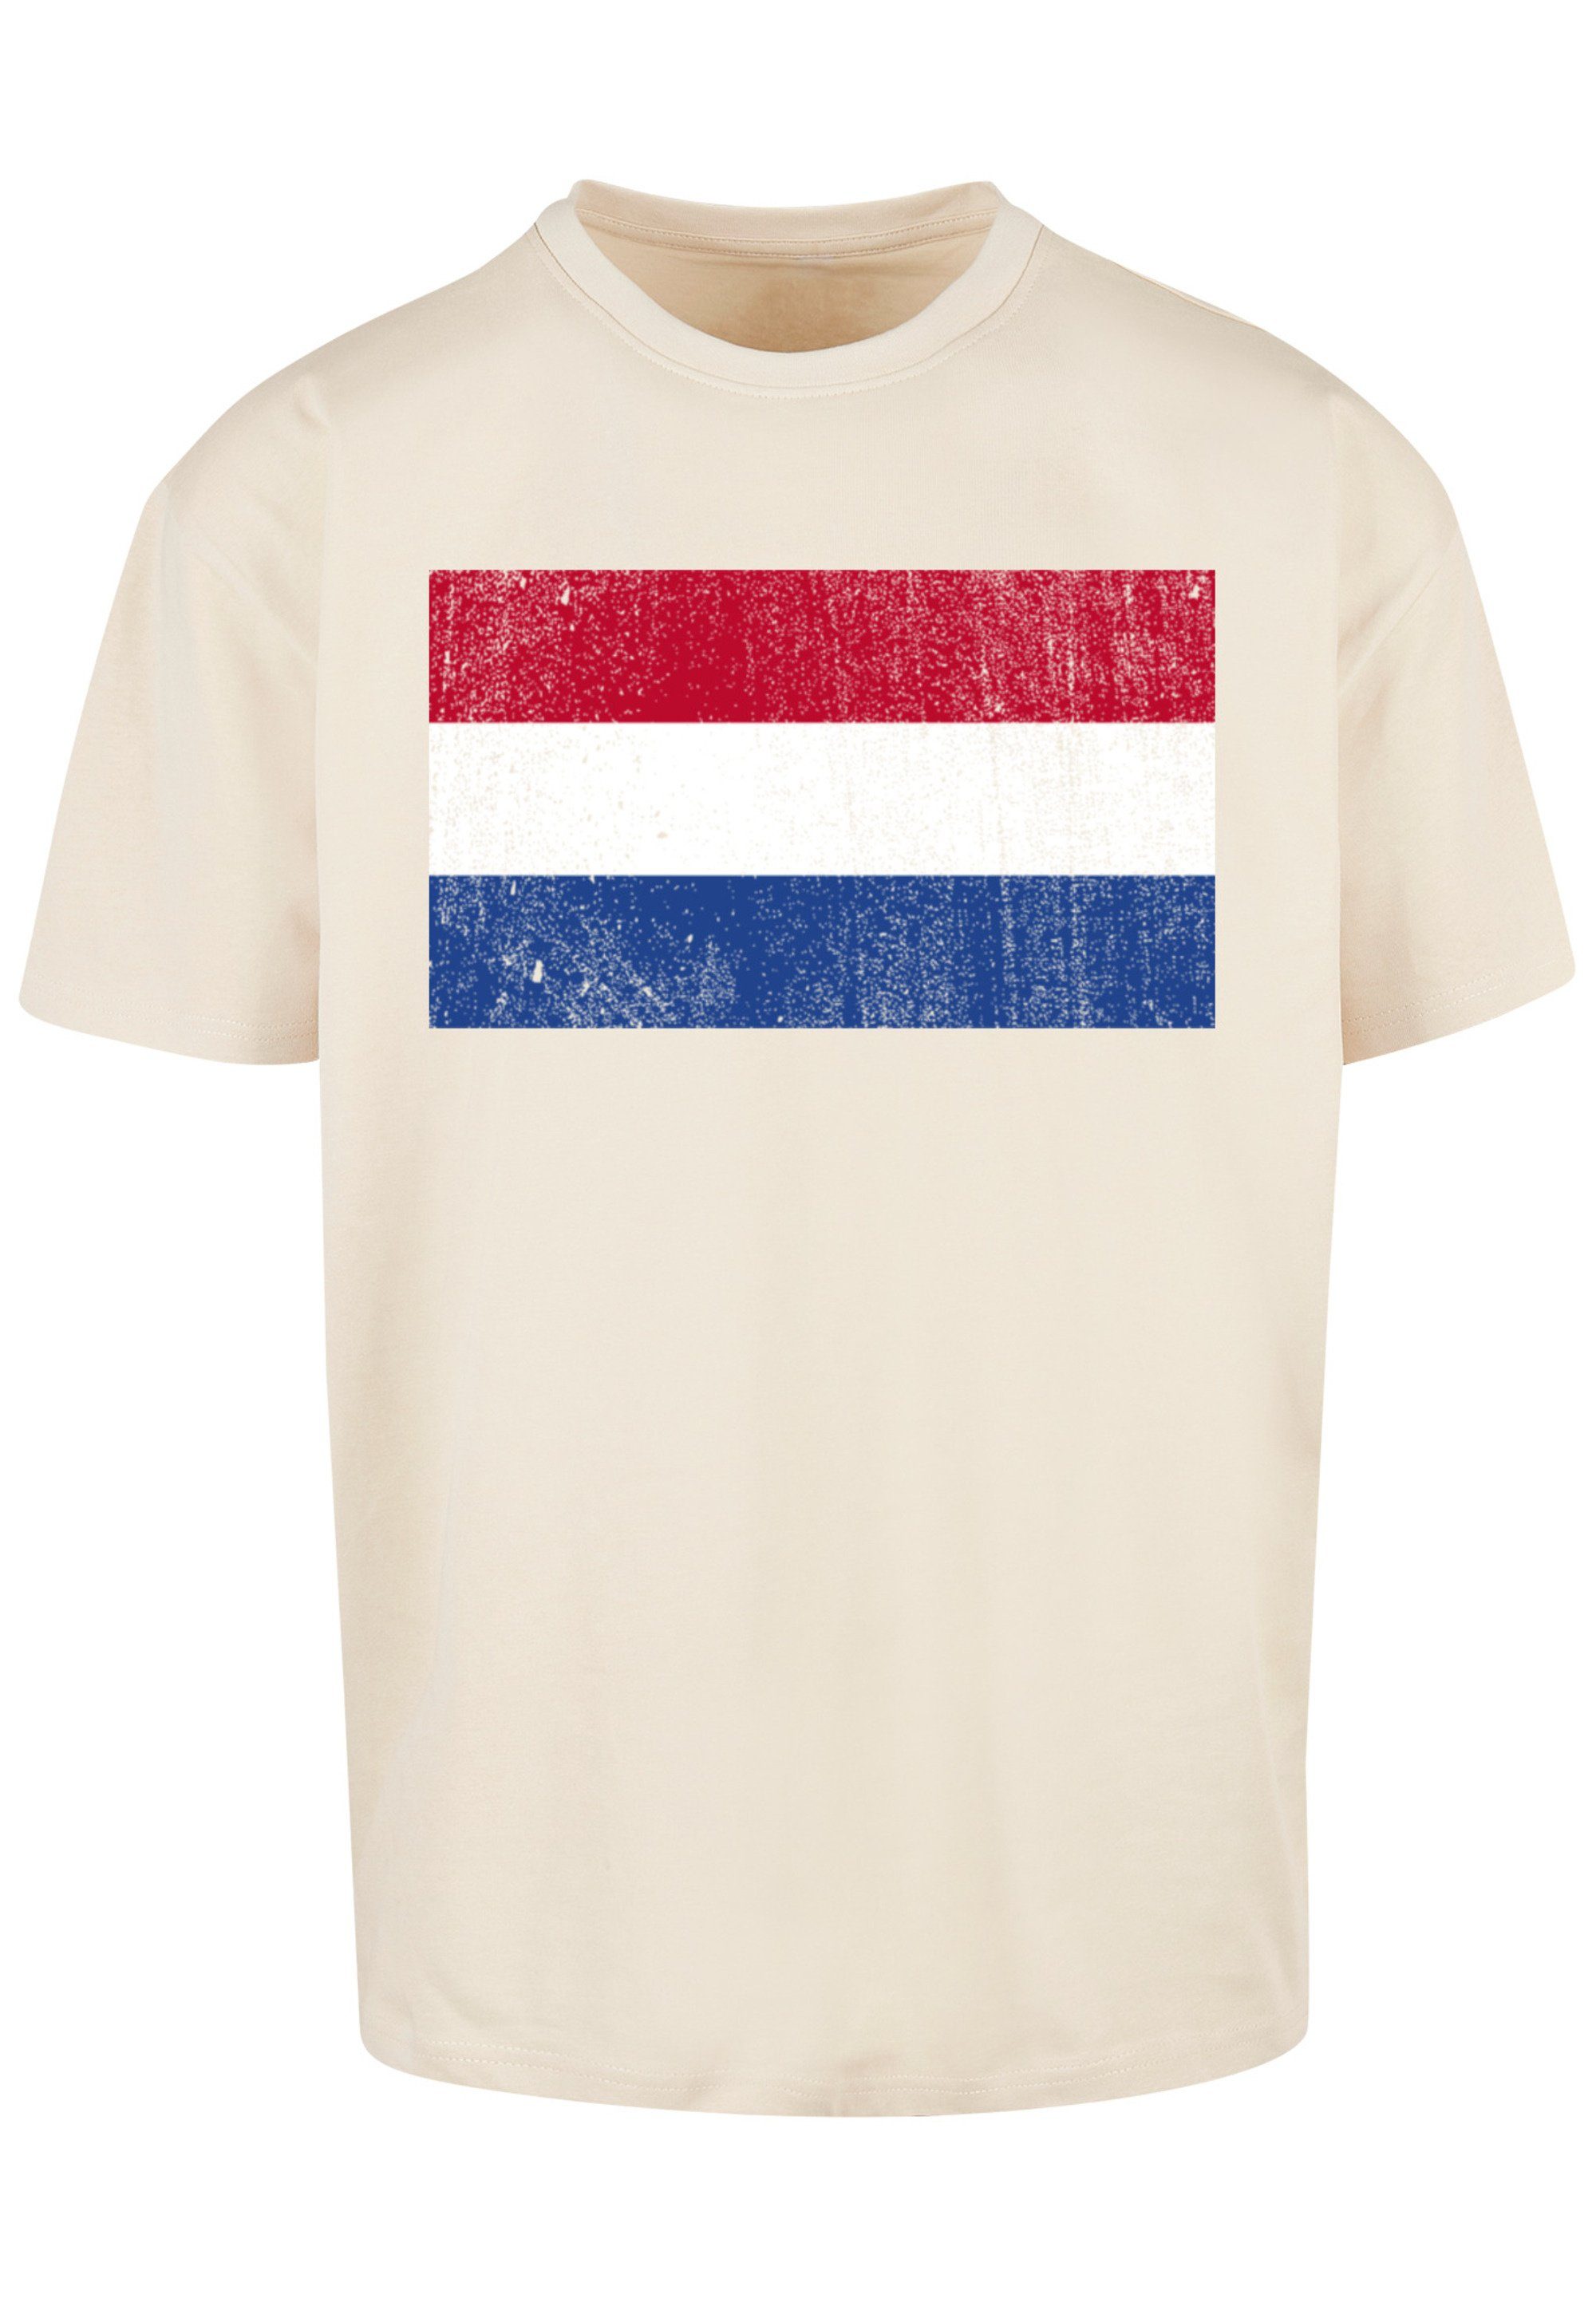 Holland distressed Netherlands T-Shirt Flagge sand F4NT4STIC NIederlande Print